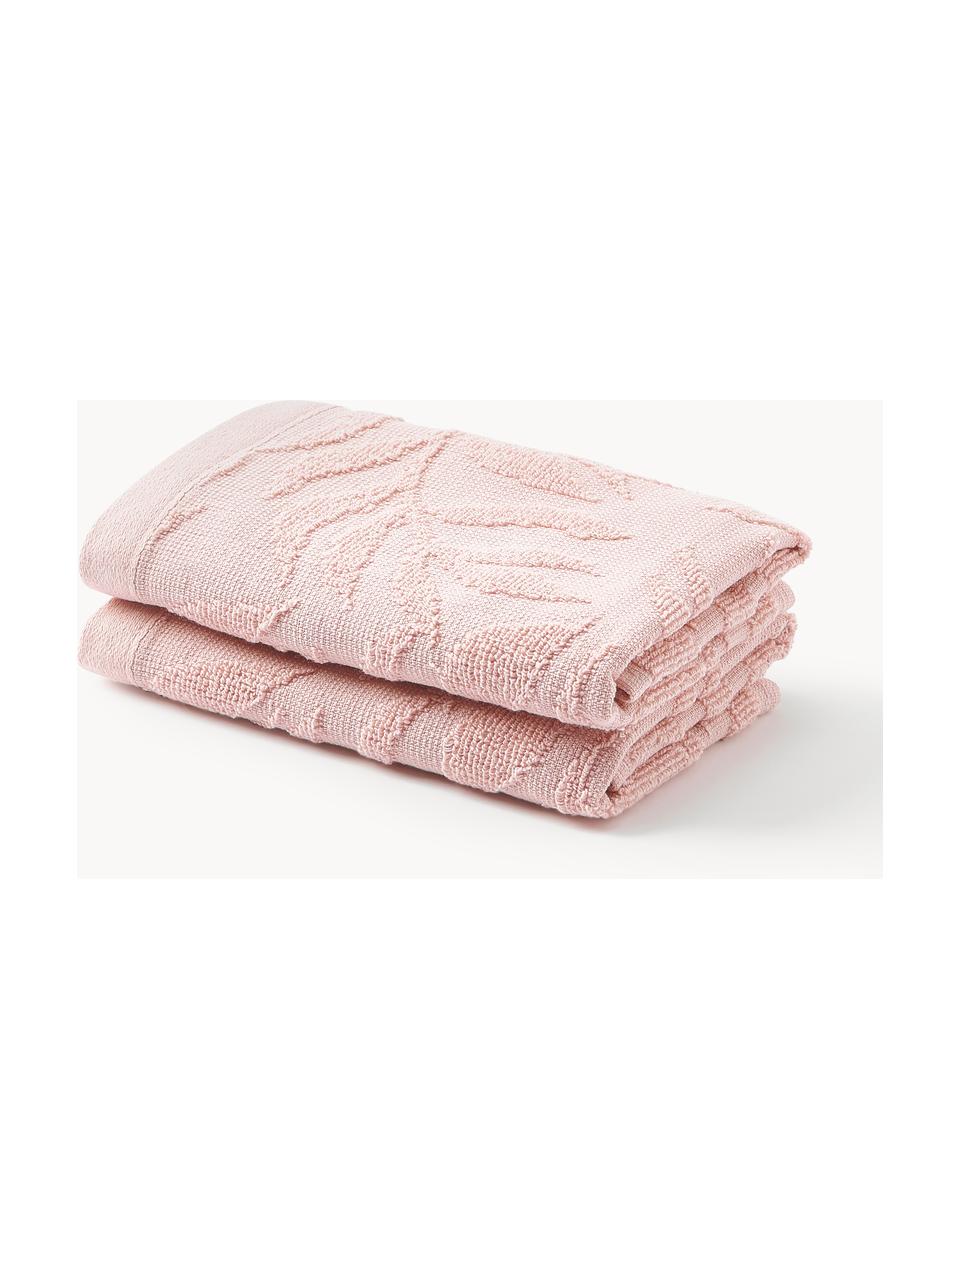 Toallas de algodón Leaf, tamaños diferentes, Rosa claro, Set de 3 (toalla tocador, toalla lavabo y toalla ducha)